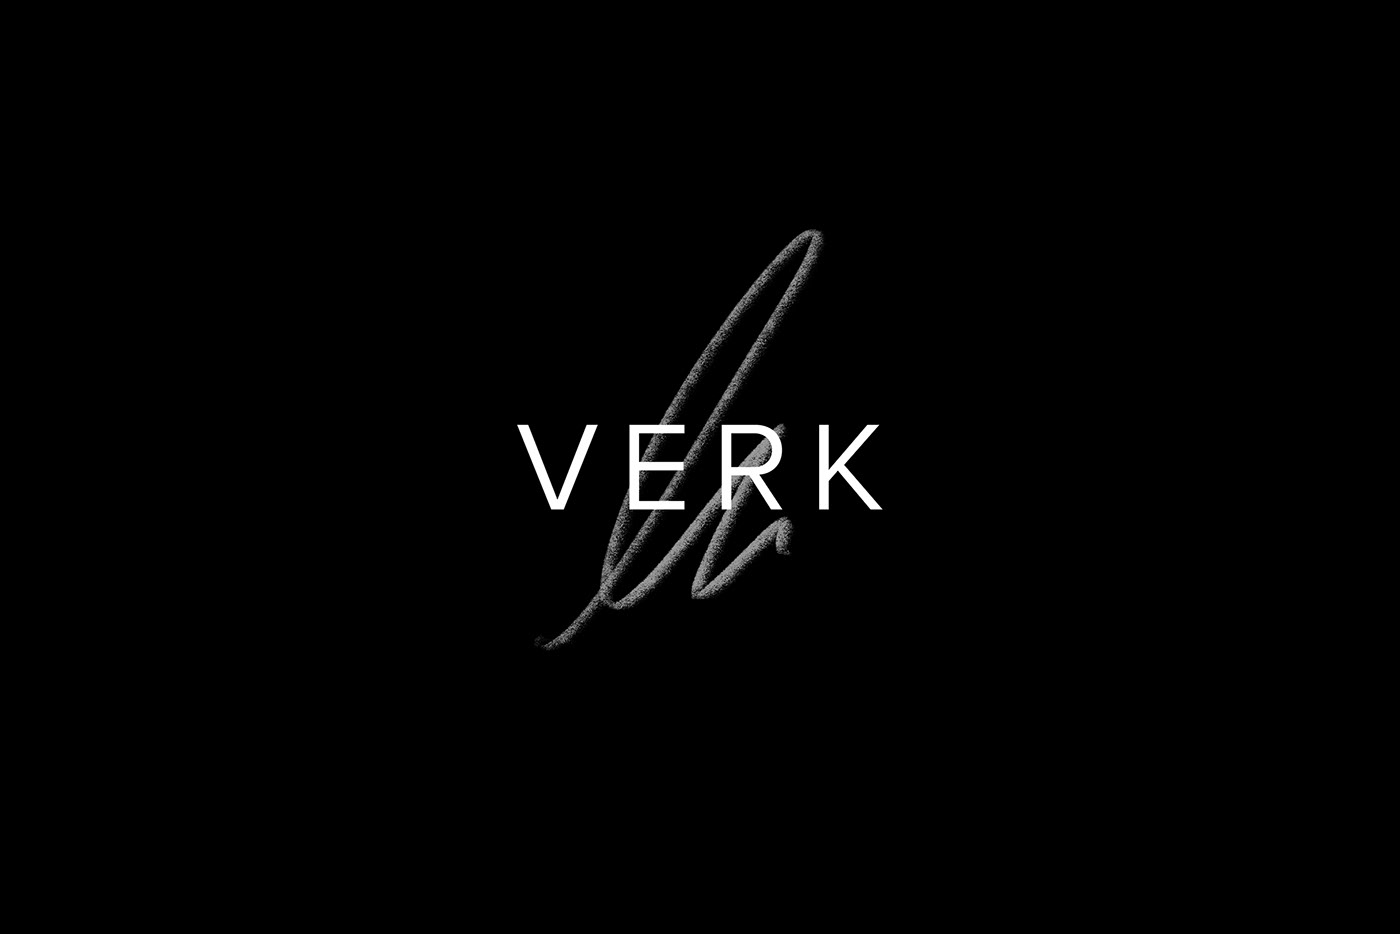 Verk手表品牌视觉设计